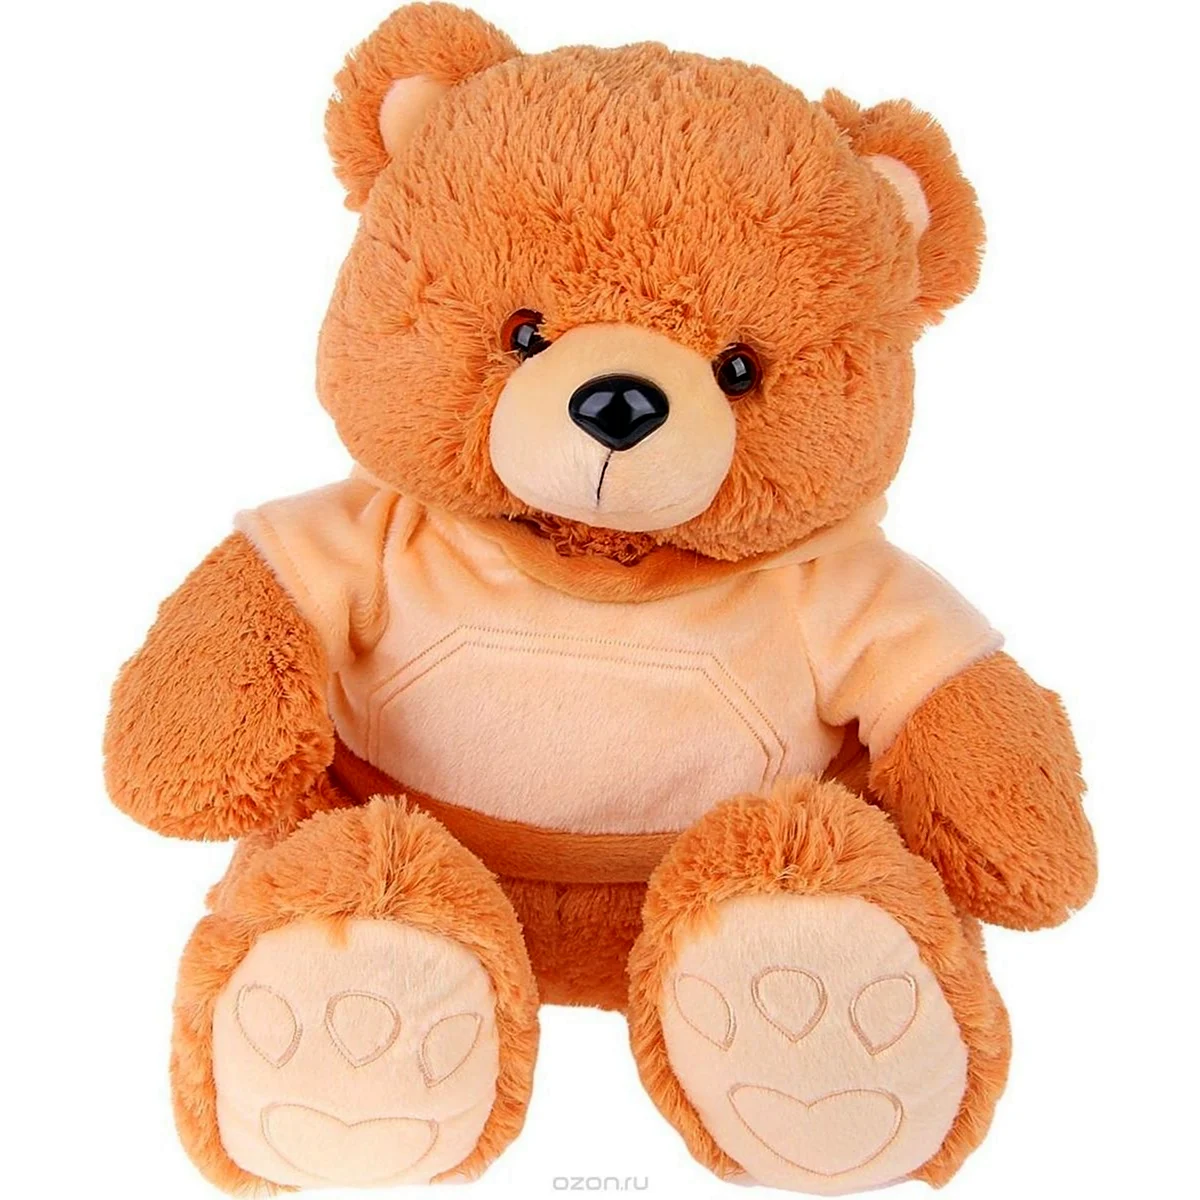 Мягкая игрушка медведь в кофте с капюшоном te amo 17x28x20 см